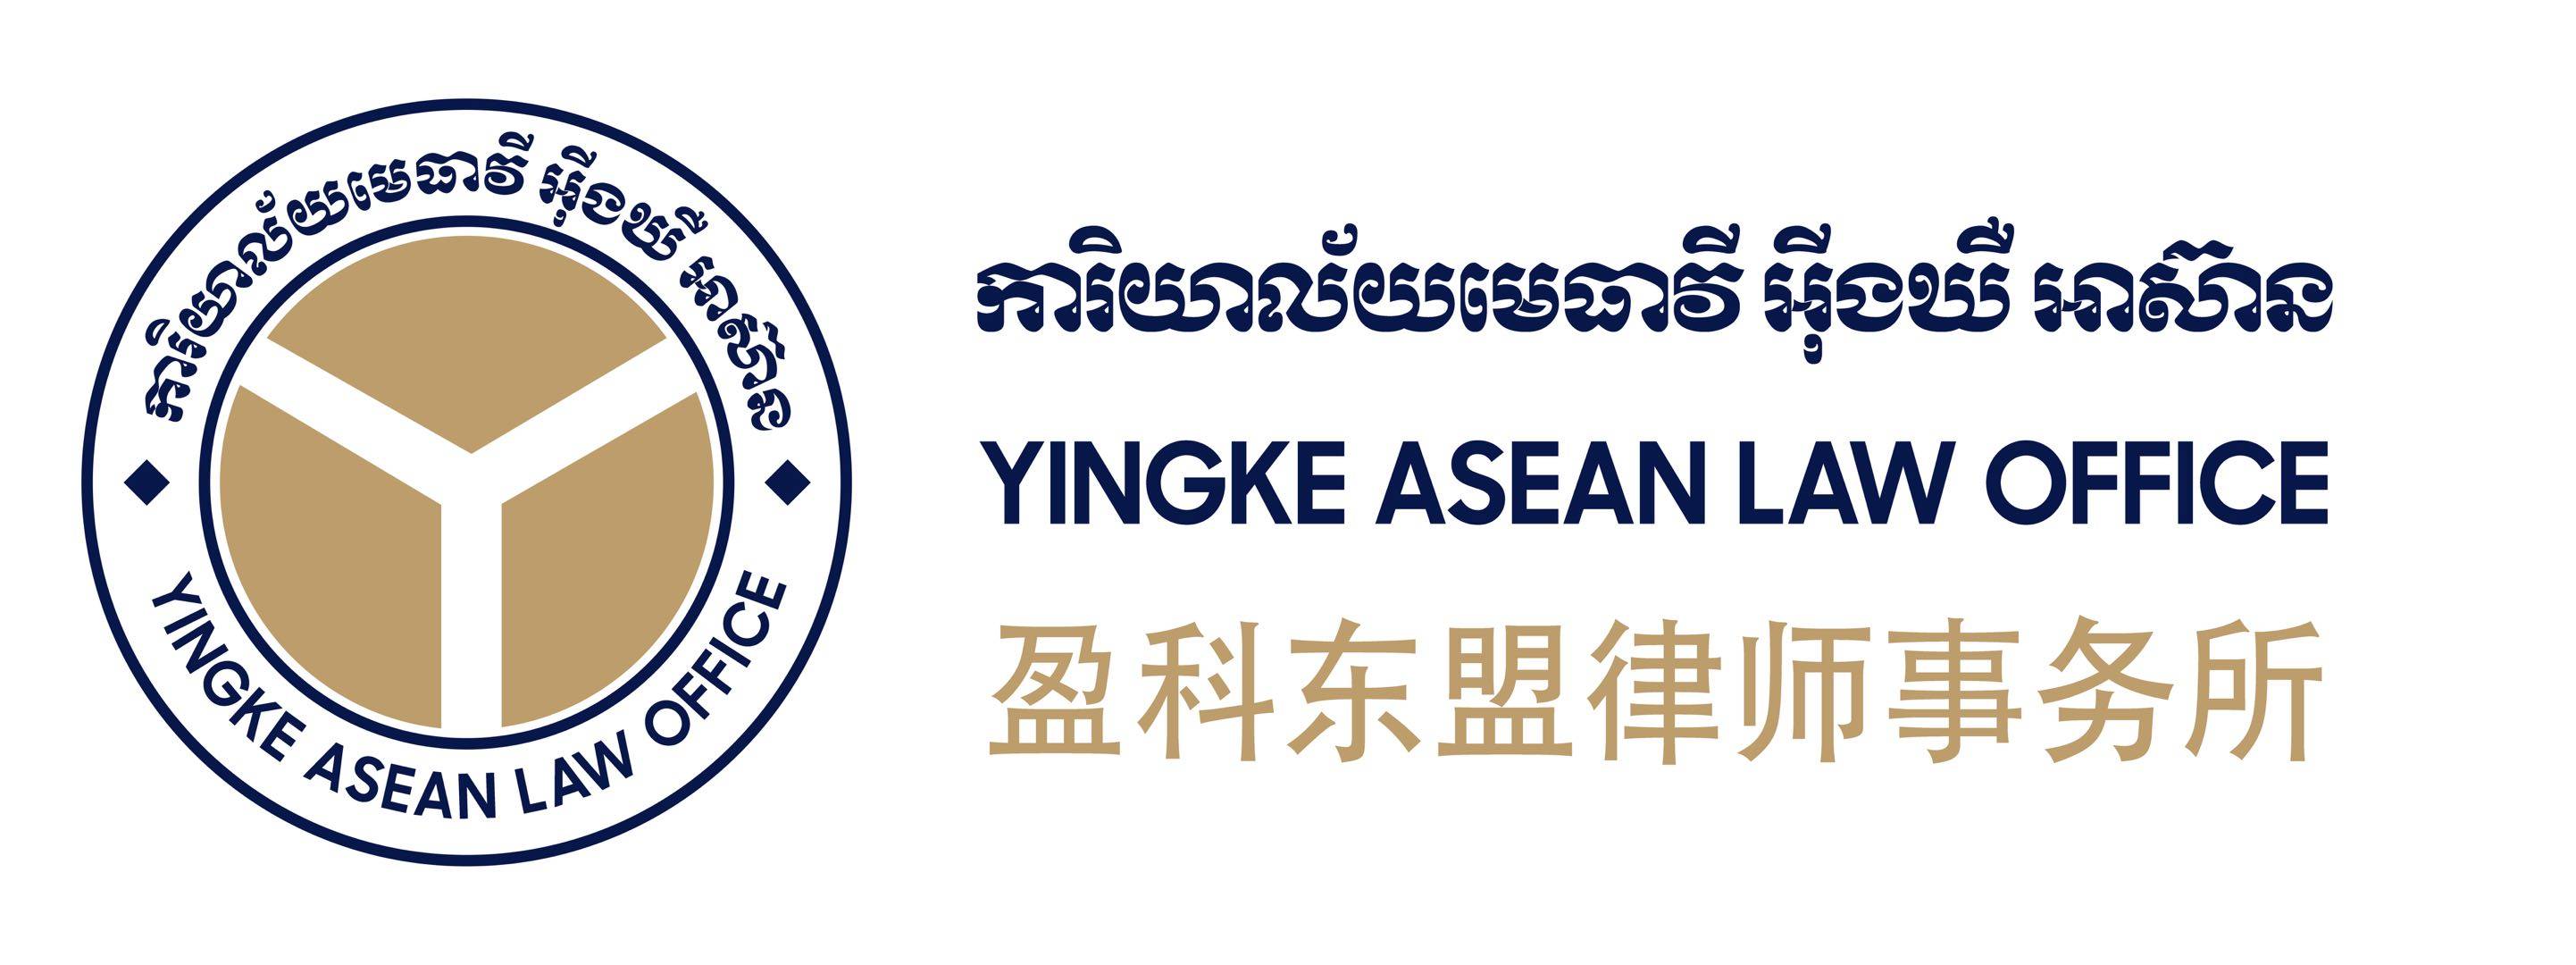 Yingke Asean law firm